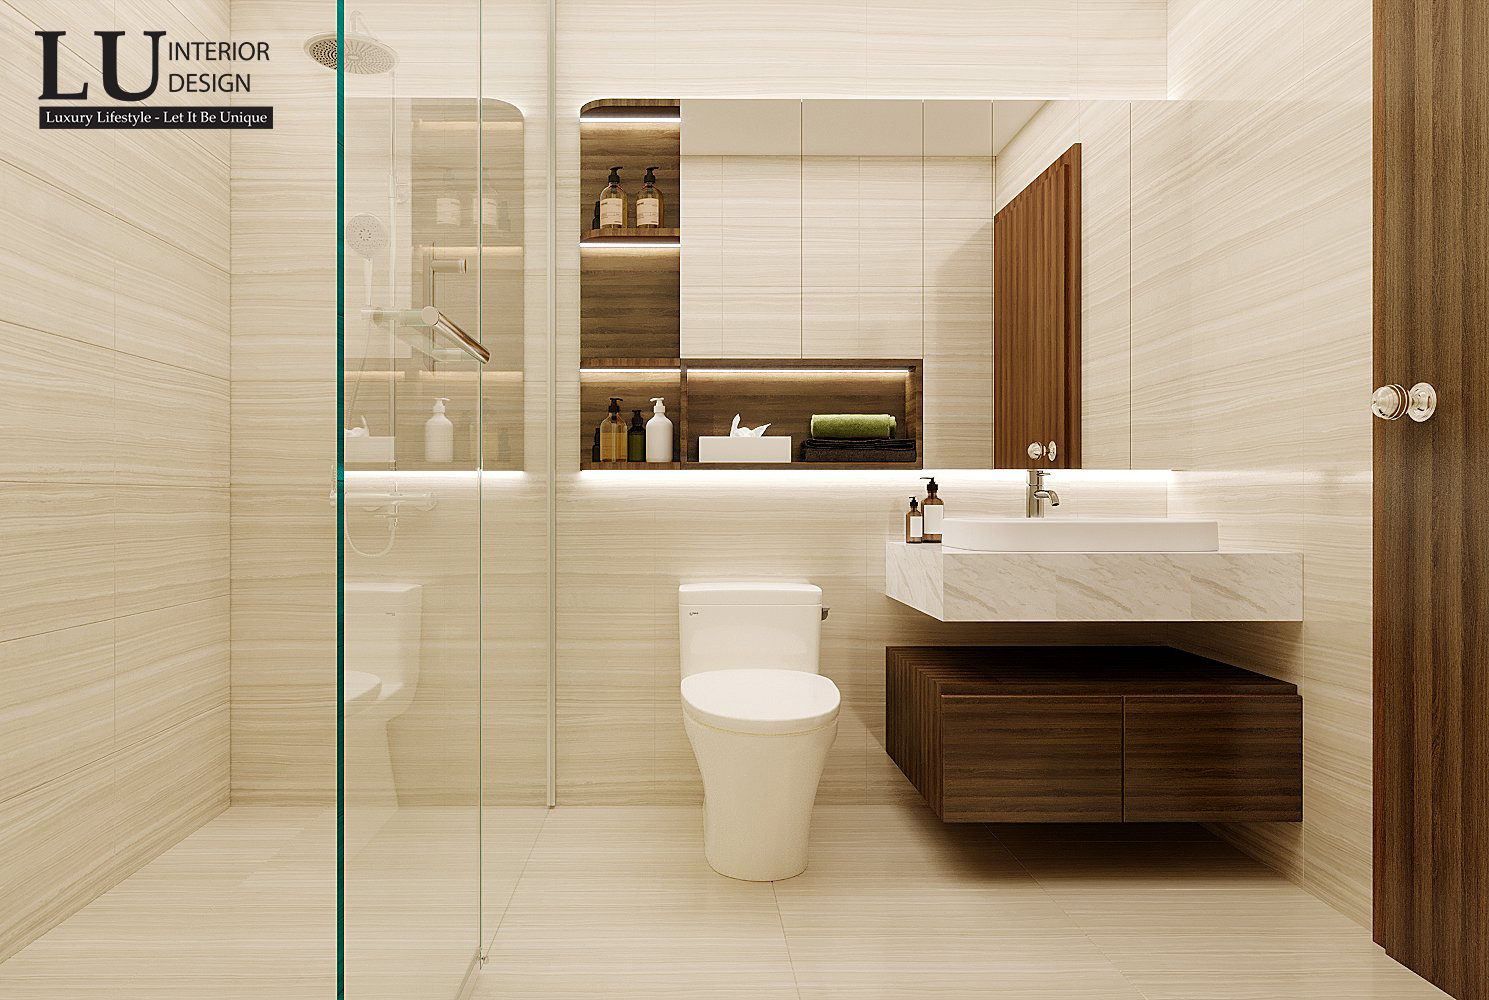 Việc sử dụng toàn bộ bằng đá cẩm thạch trắng khiến cho phòng tắm tuy sử dụng chiếu sáng nhân tạo là chủ yếu nhưng vẫn tạo cảm giác sáng sủa và thư giãn.